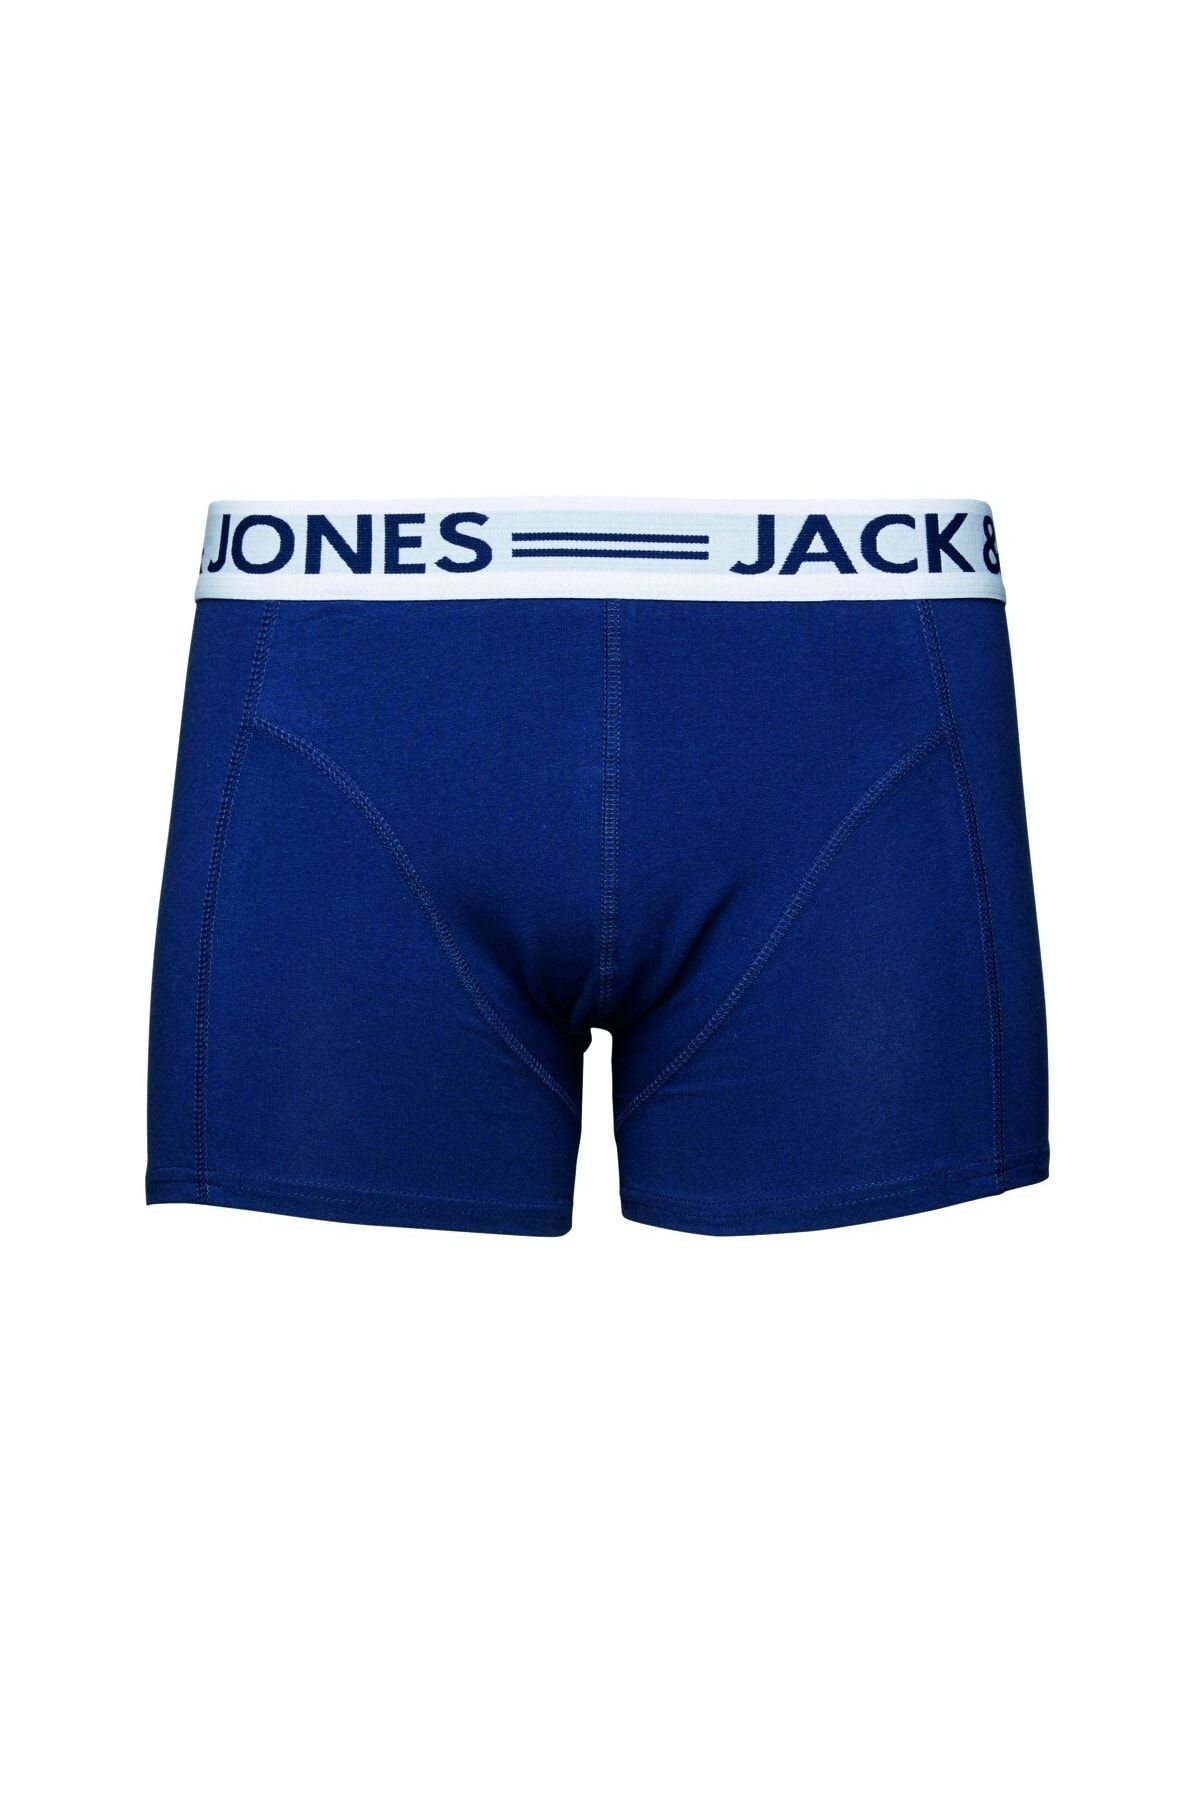 Jack & Jones Jack&jones Mavi Erkek Boxer 12075392